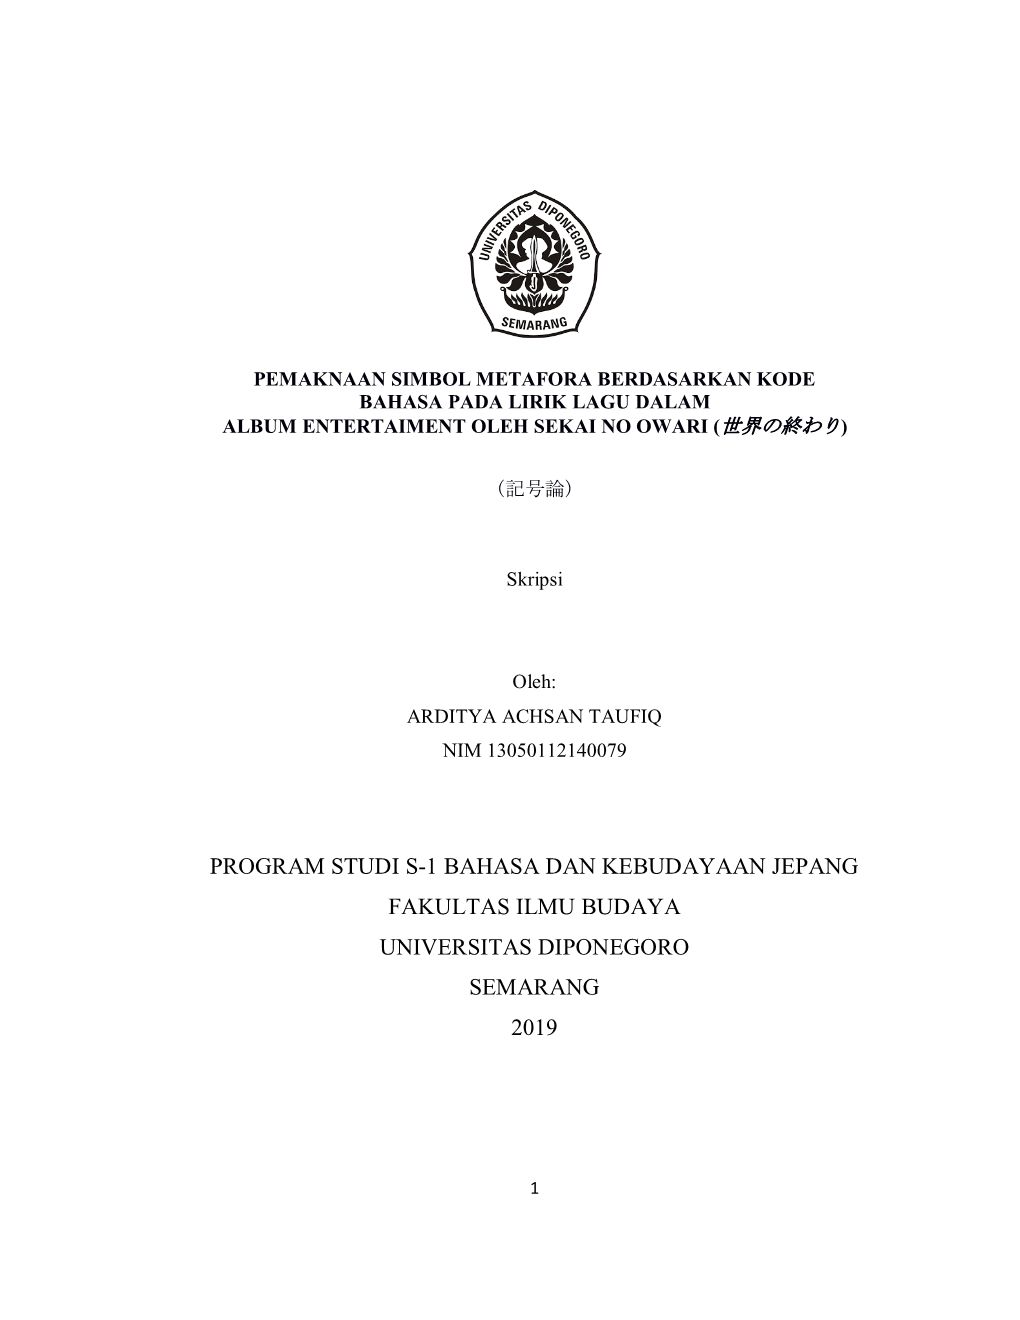 Program Studi S-1 Bahasa Dan Kebudayaan Jepang Fakultas Ilmu Budaya Universitas Diponegoro Semarang 2019